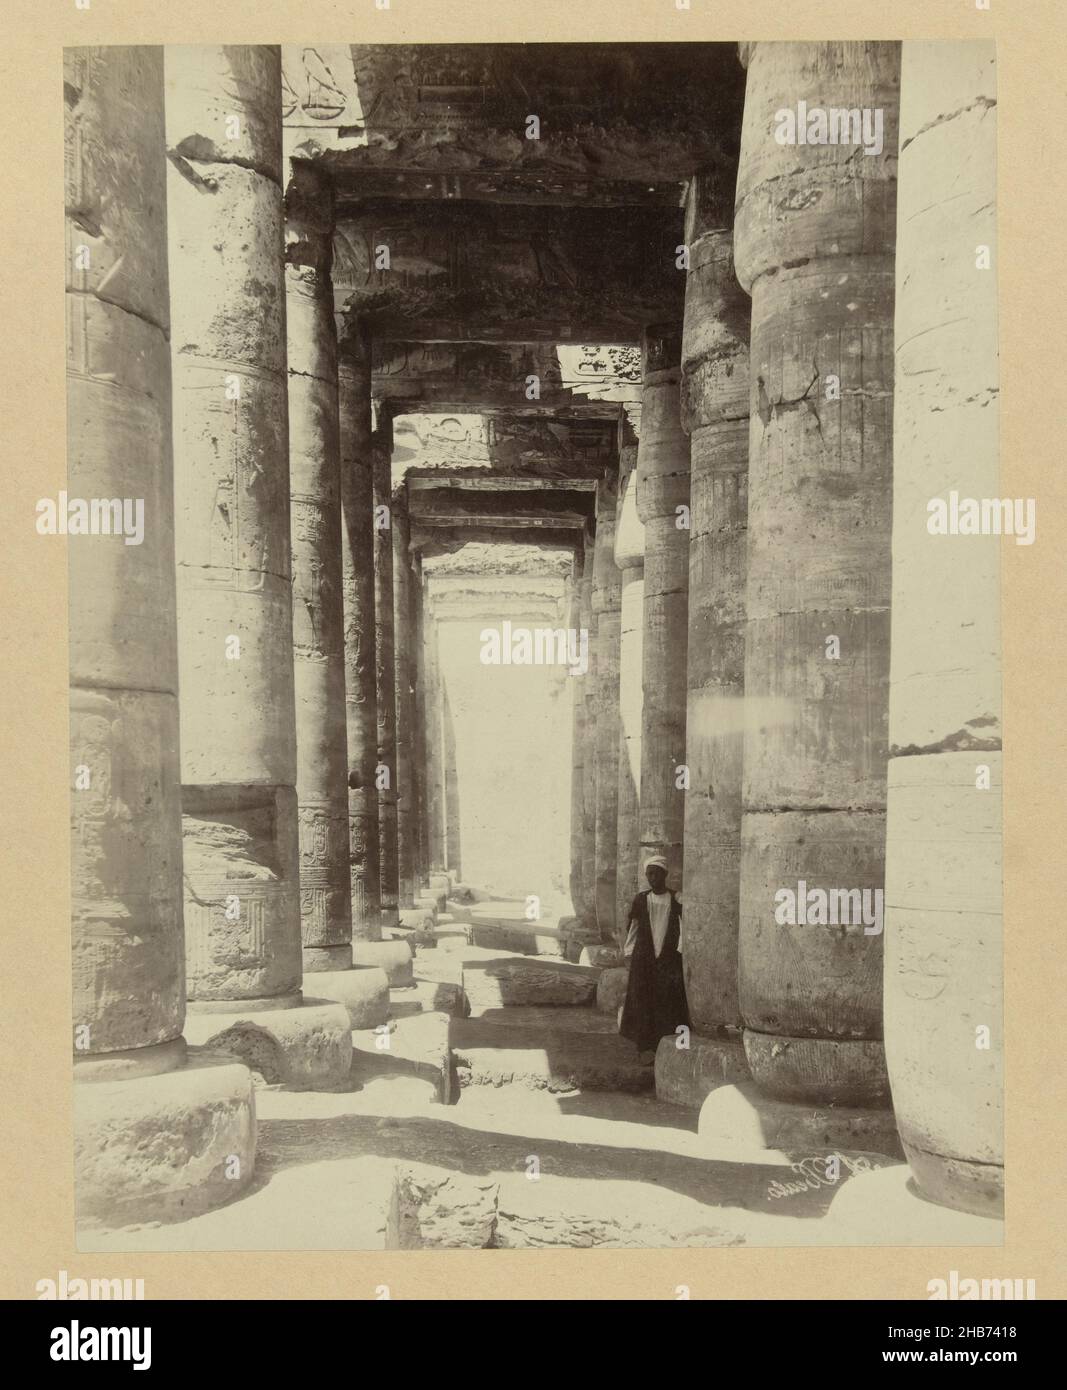 Colonnato nel tempio di Abydos, e 62 colonnato, tempio di Abydos, (costruito dal re Seti i (1400 a.C.)). Alto Egitto. (Titolo sull'oggetto), Egitto (titolo della serie), la fotografia fa parte della serie di fotografie dall'Egitto raccolte da Richard Polak., Antonio Beato (menzionato sull'oggetto), Egypte, c.. 1888 - c. 1898, supporto fotografico, carta, stampa albume, altezza 197 mm x larghezza 260 mm altezza 467 mm x larghezza 557 mm Foto Stock